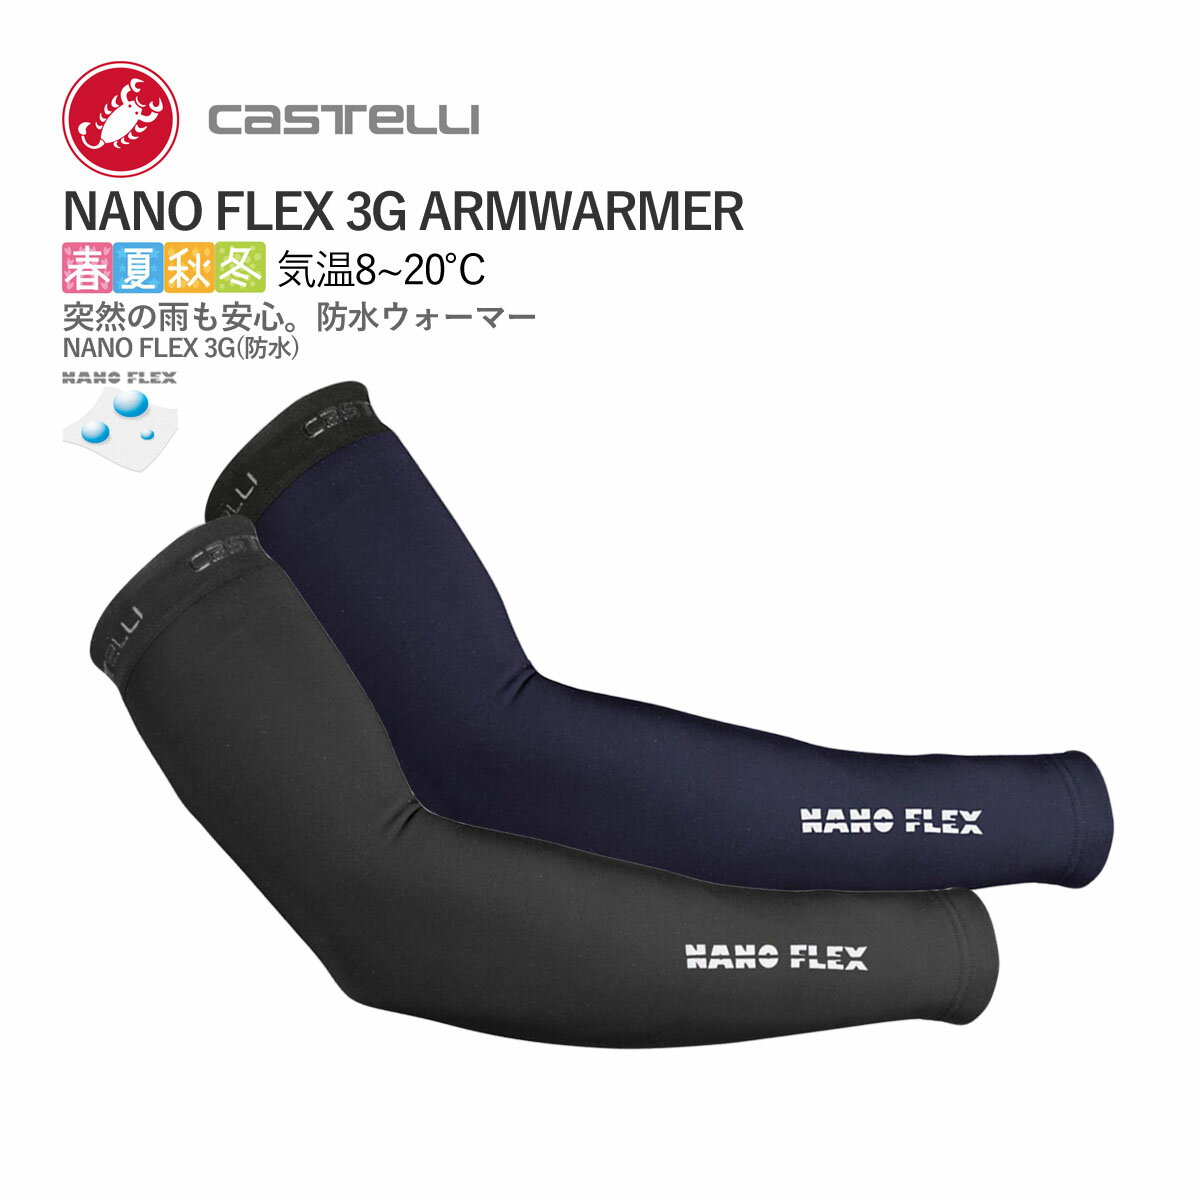 【即納】CASTELLI 19529 NANO FLEX 3G ARMWARMER カステリ ナノフレックス アームウォーマー